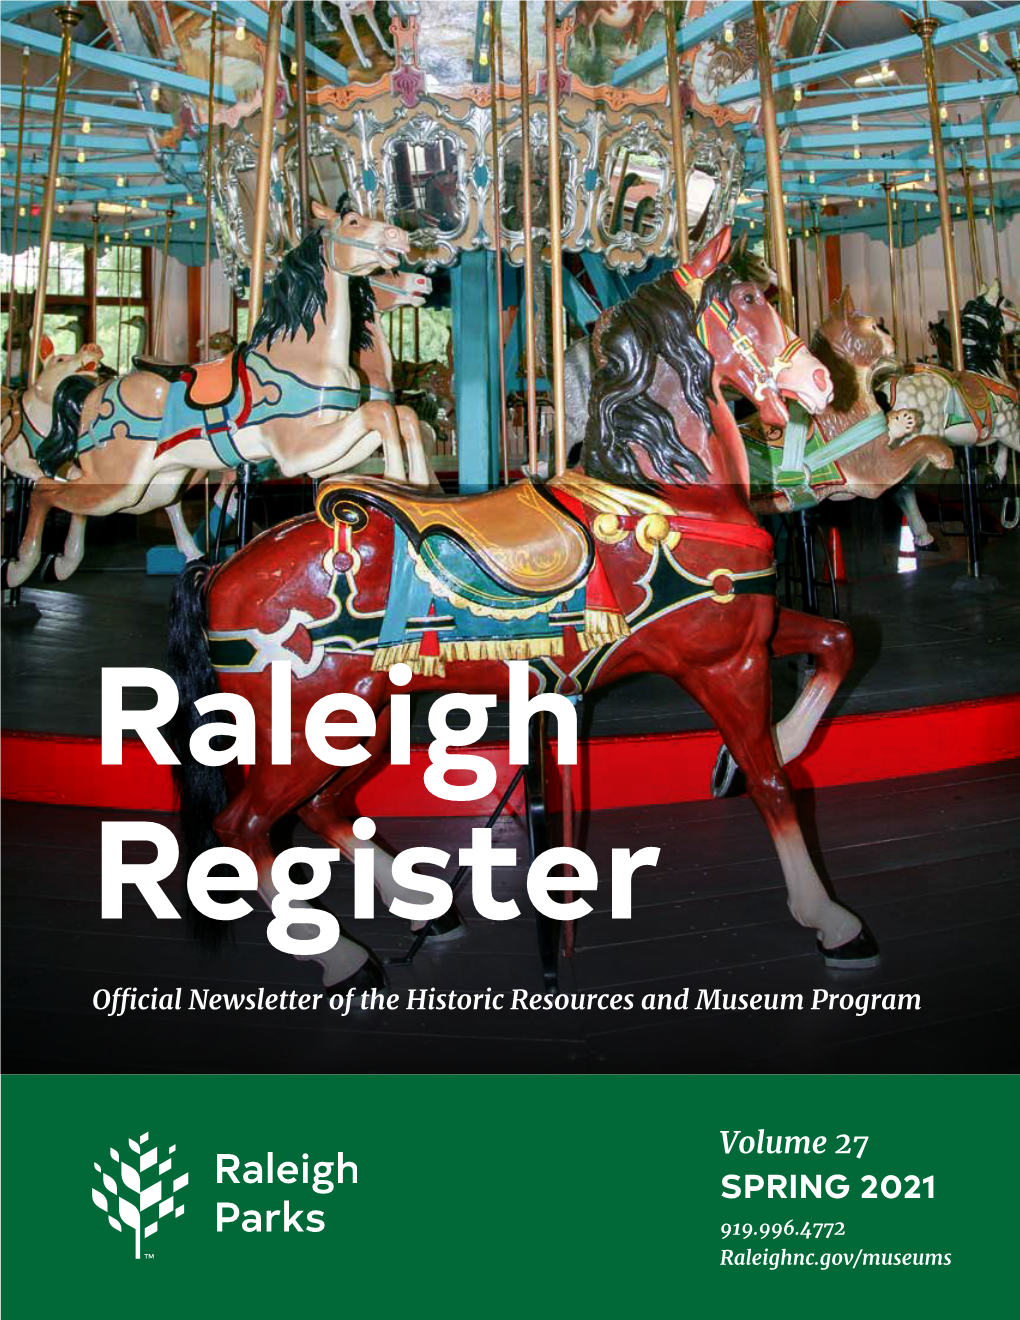 Raleigh Register Newsletter Spring 2021